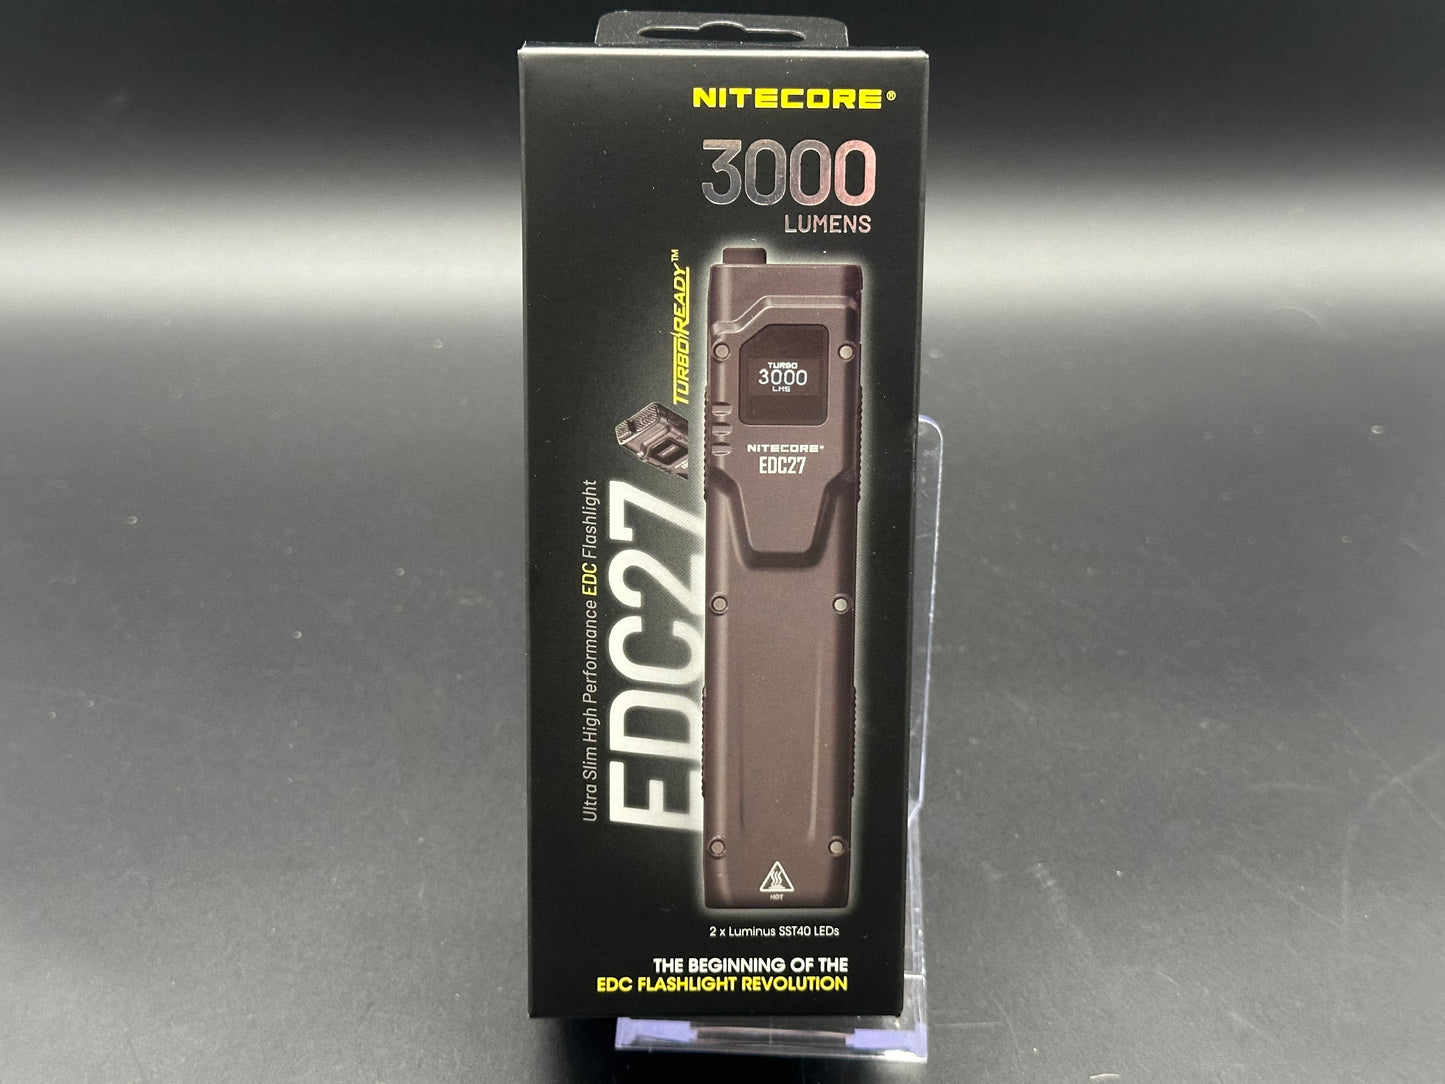 Nitecore EDC27 3000 Lumen Ultra Slim Flat EDC Flashlight